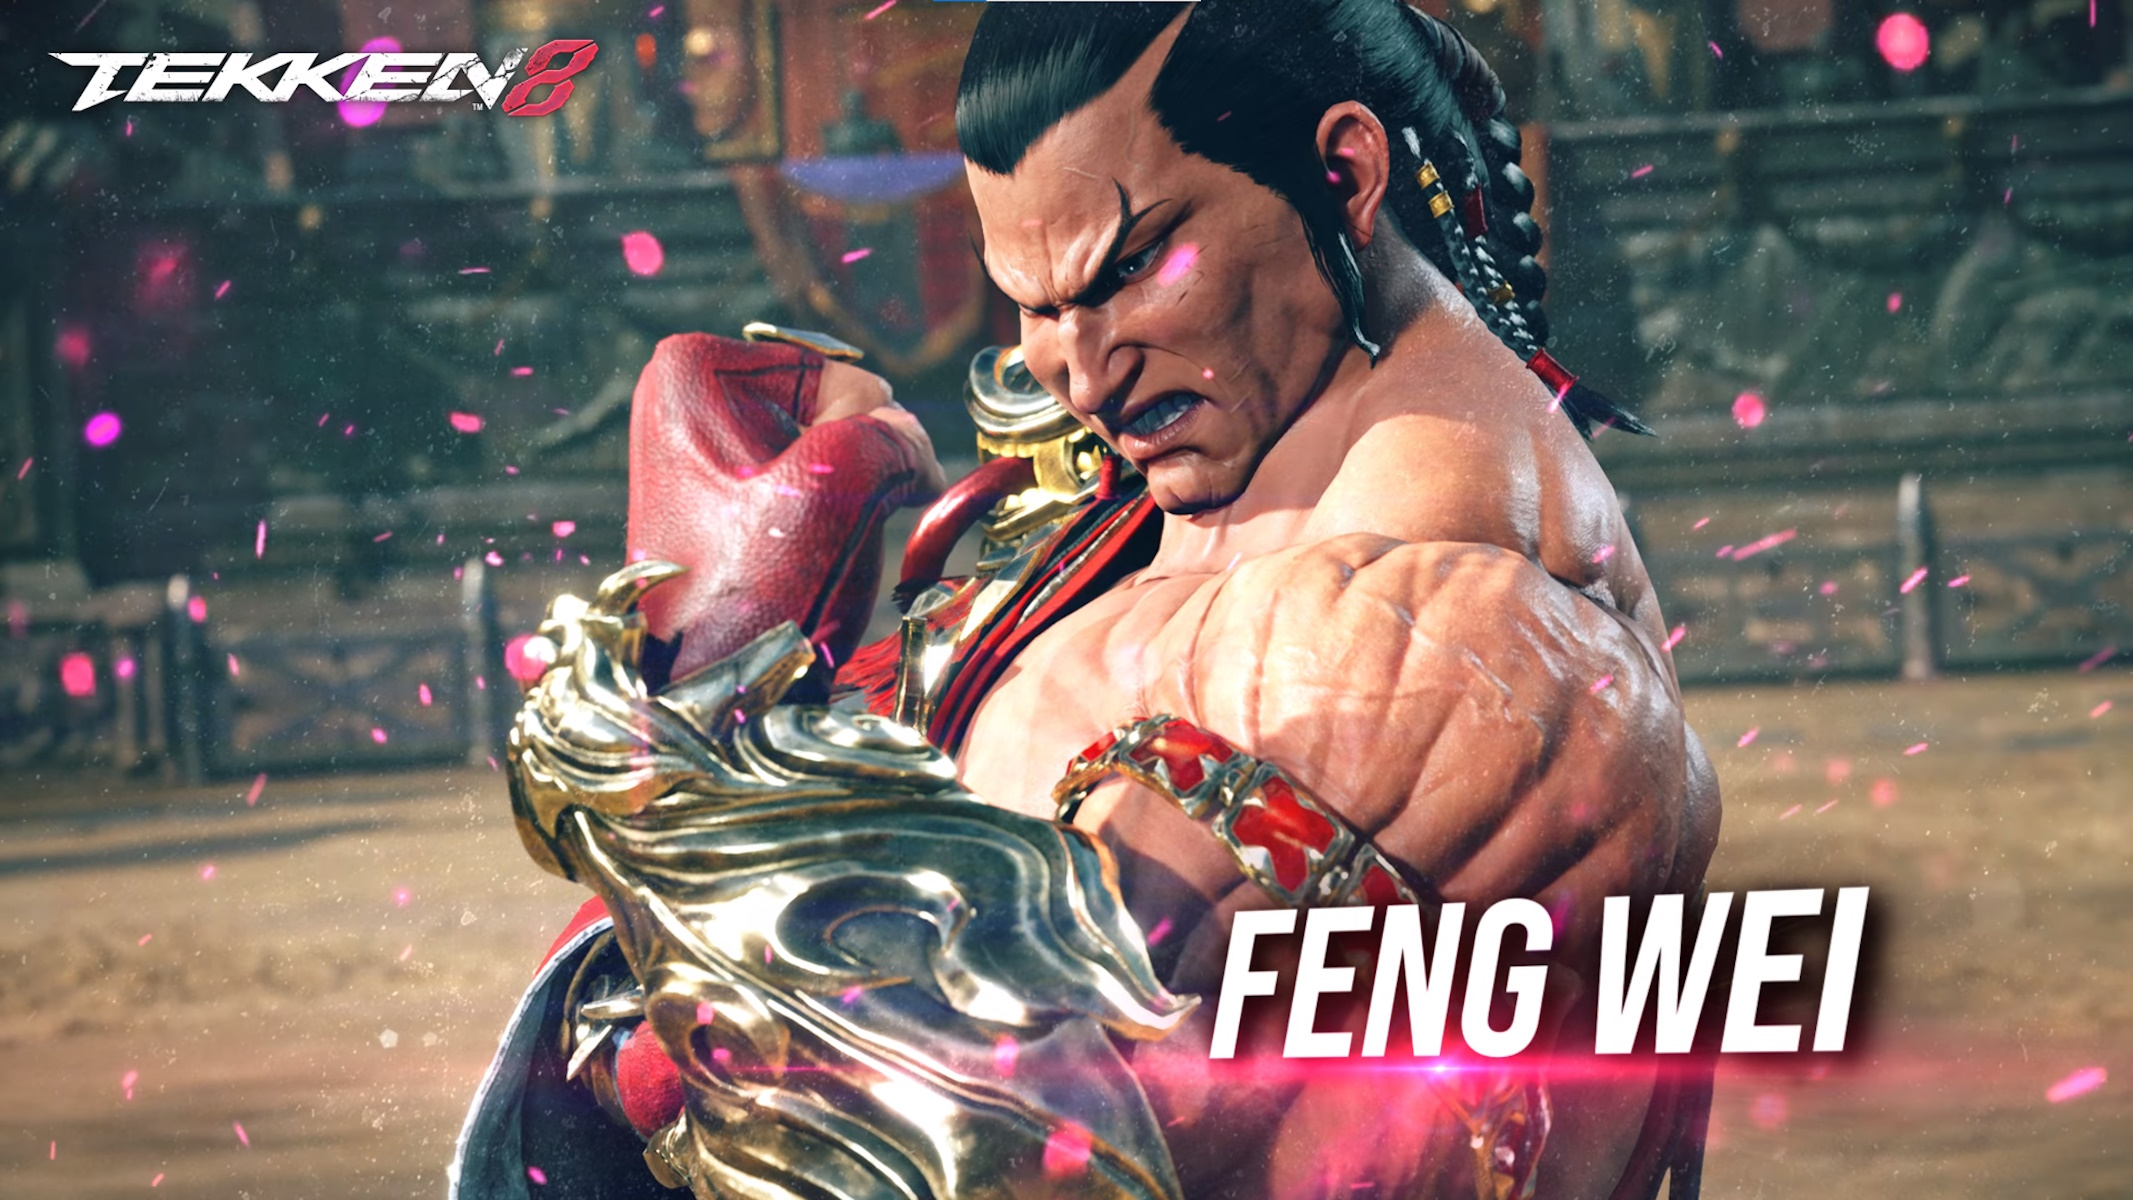 Tekken 8 Feng Wei